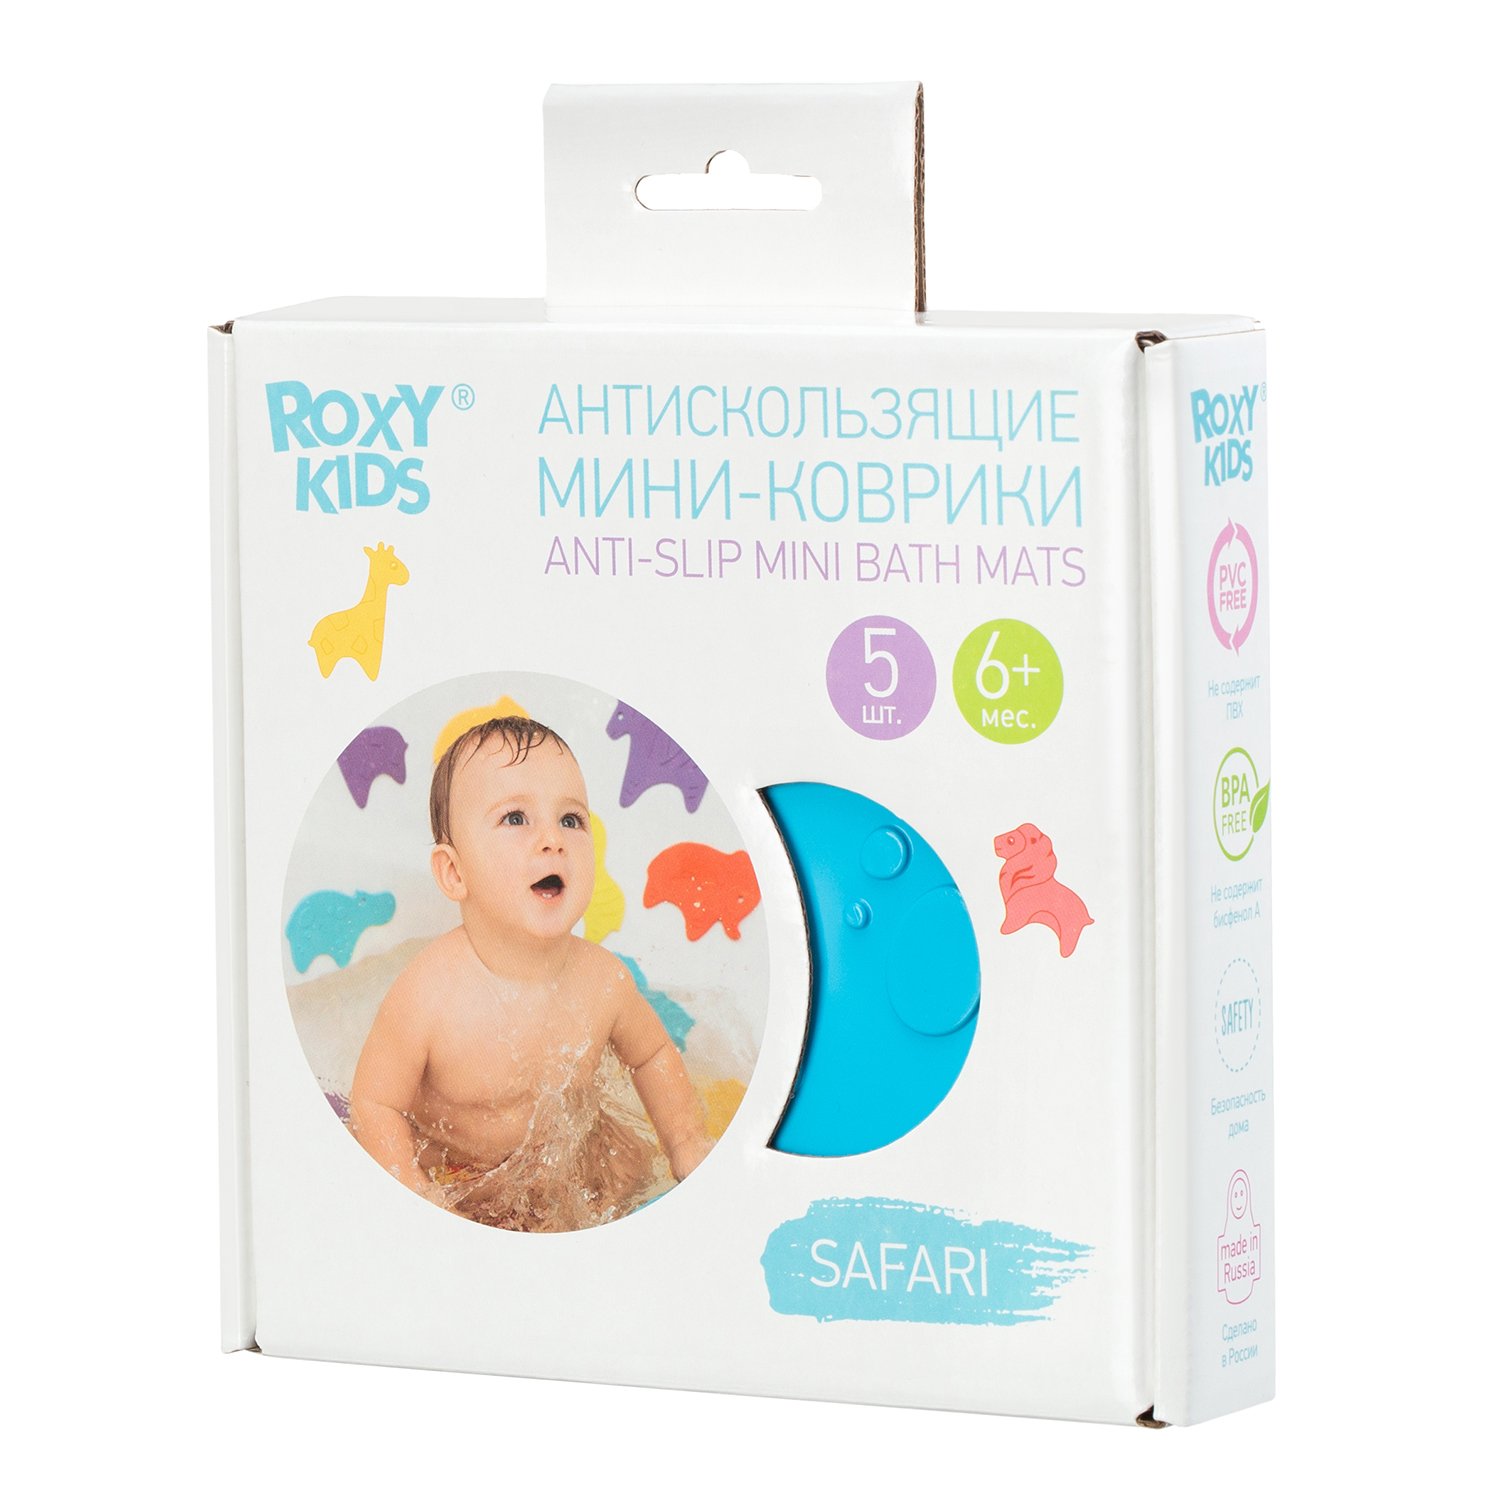 Мини-коврики детские ROXY-KIDS для ванной противоскользящие Safari 5 шт цвета в ассортименте - фото 3